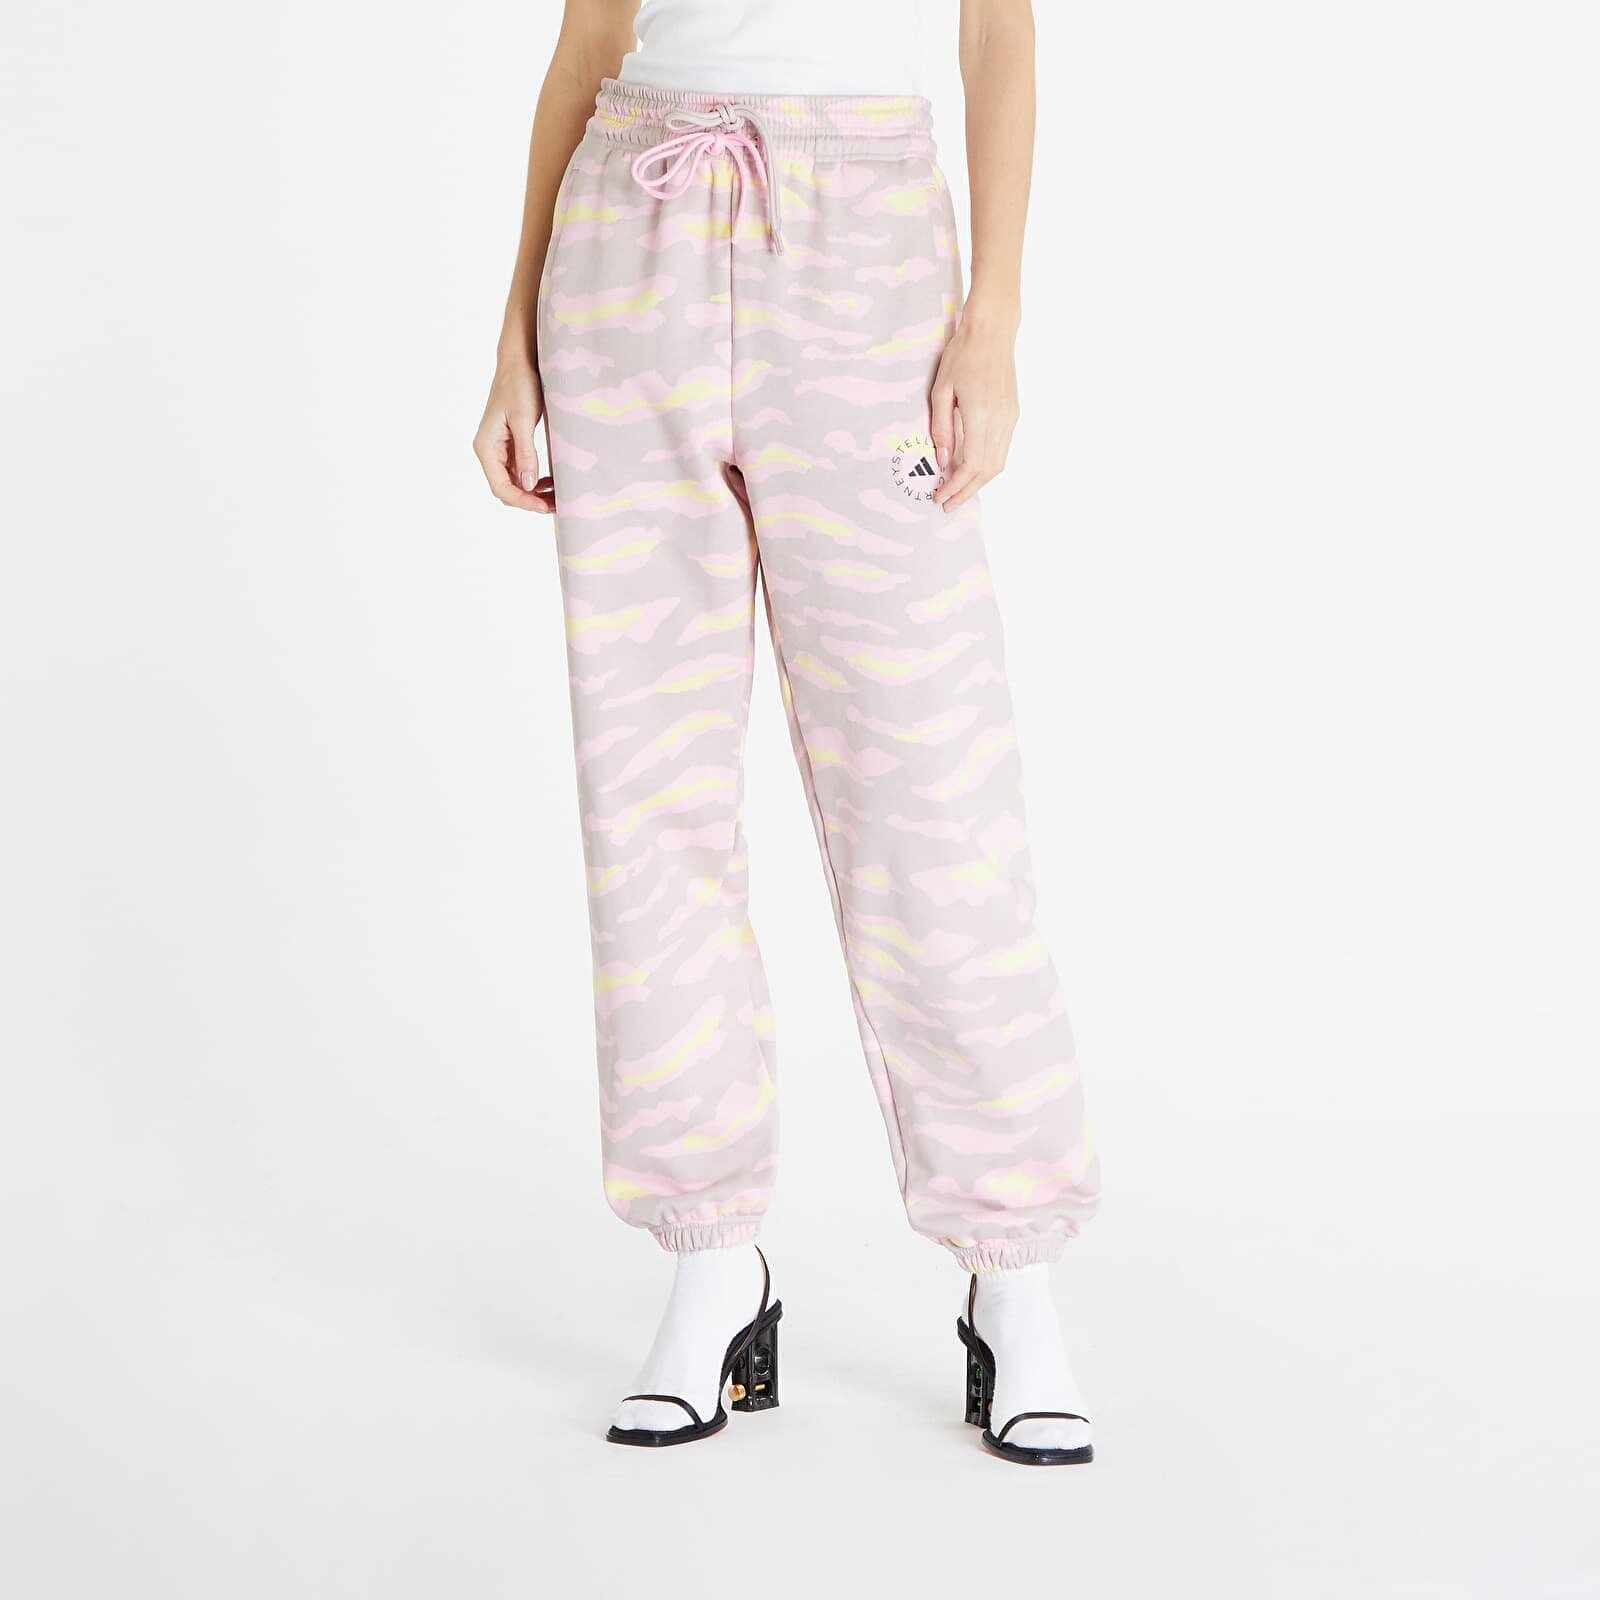 adidas x Stella McCartney Sweatpants New Rose/ Yellow/ True Pink